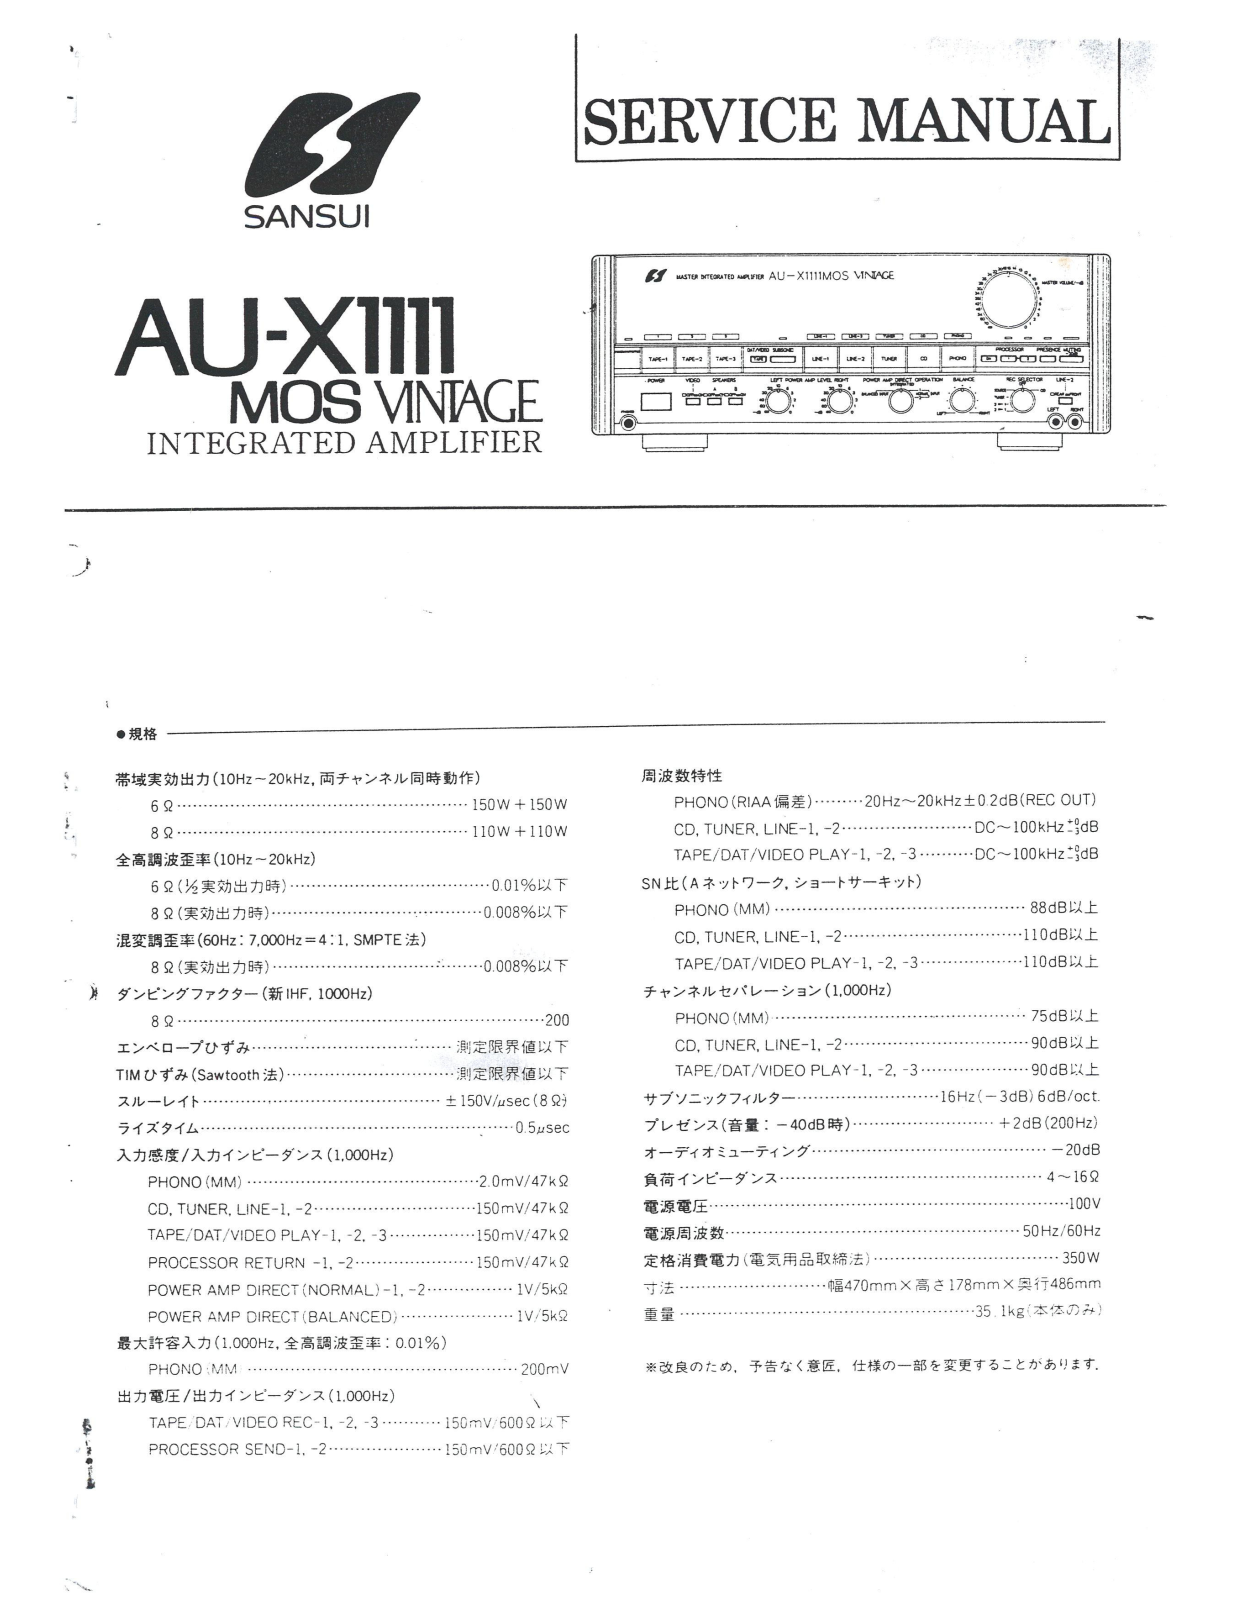 Sansui AU-X1111-Mos Service Manual